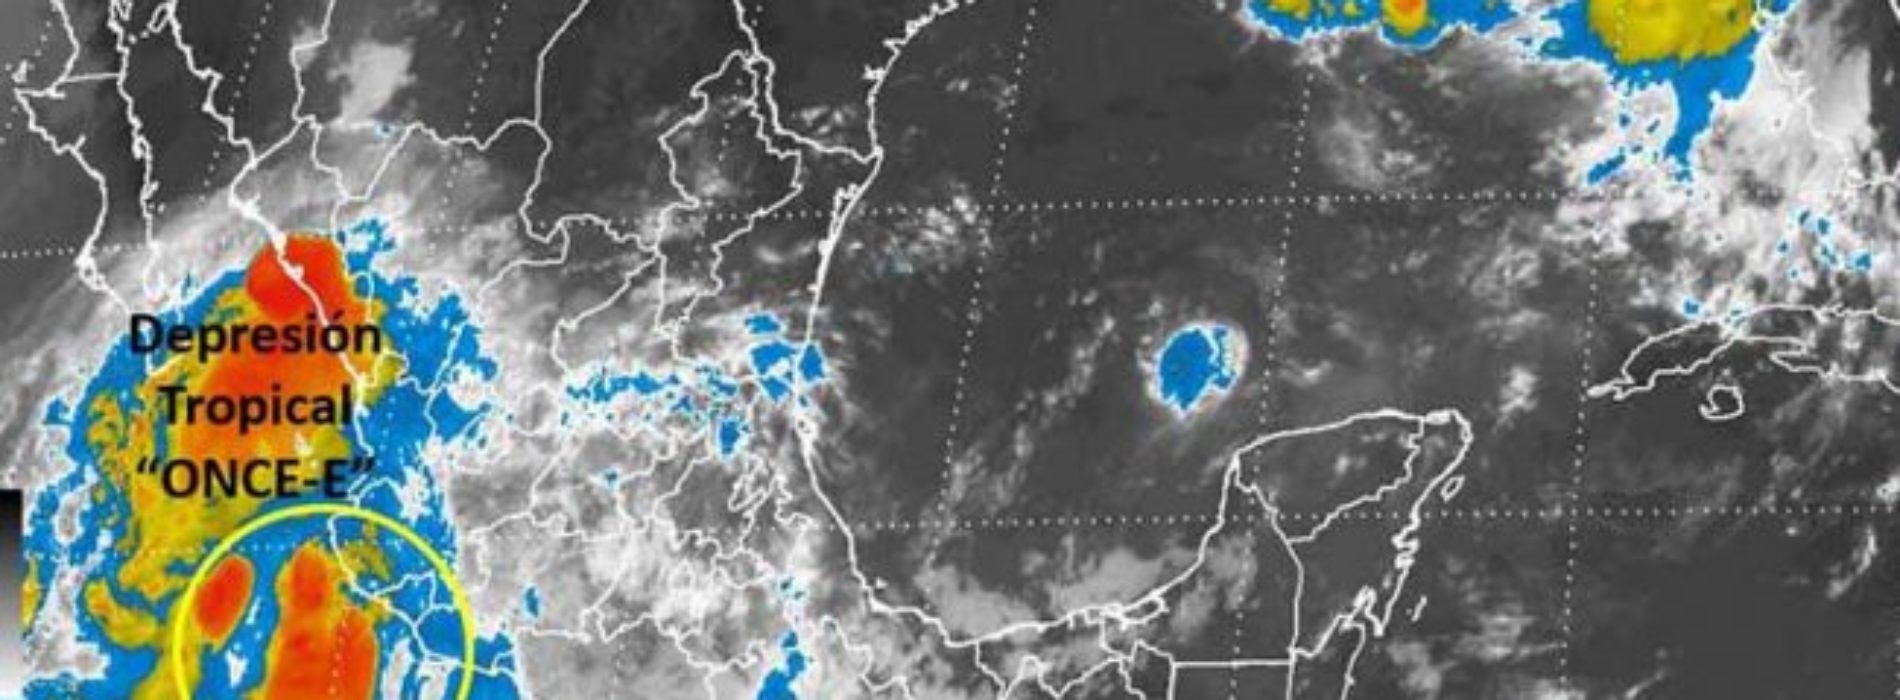 Emiten alerta para costas de Oaxaca por Depresión Tropical
“Once-E”